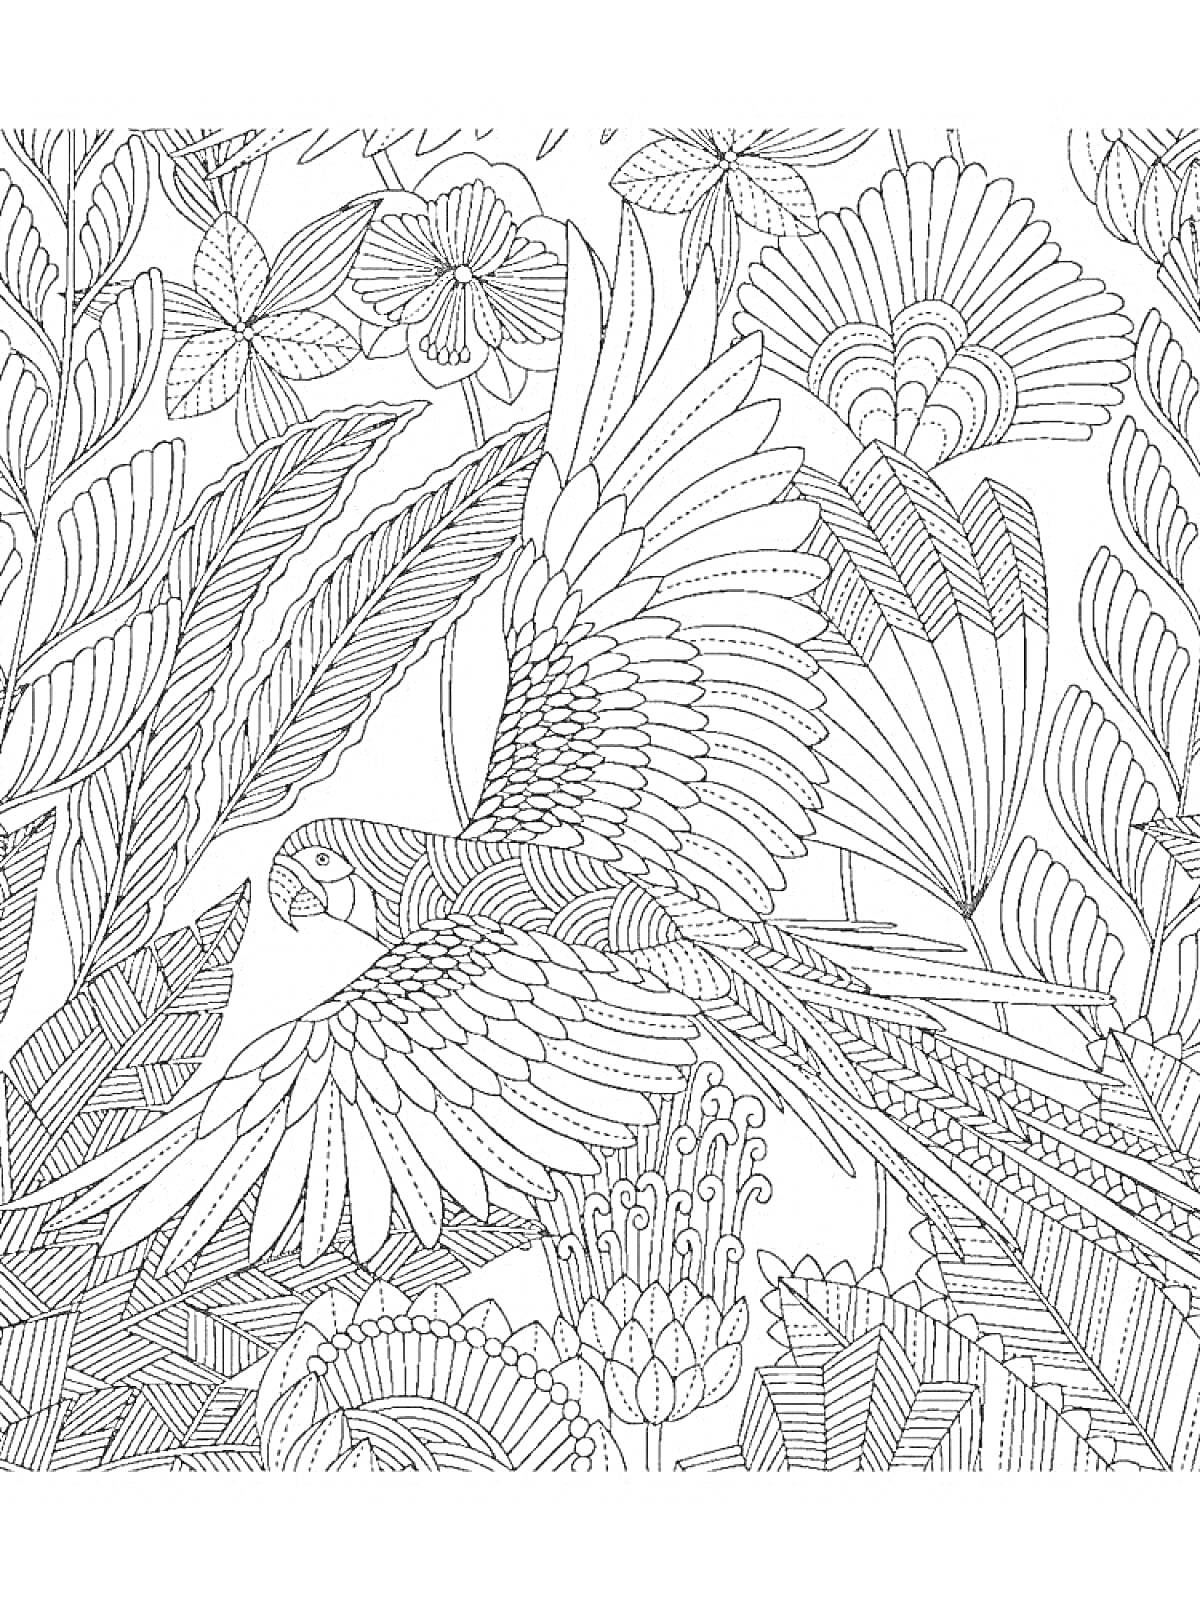 Раскраска Попугай среди различных цветов и листьев, антистресс раскраска